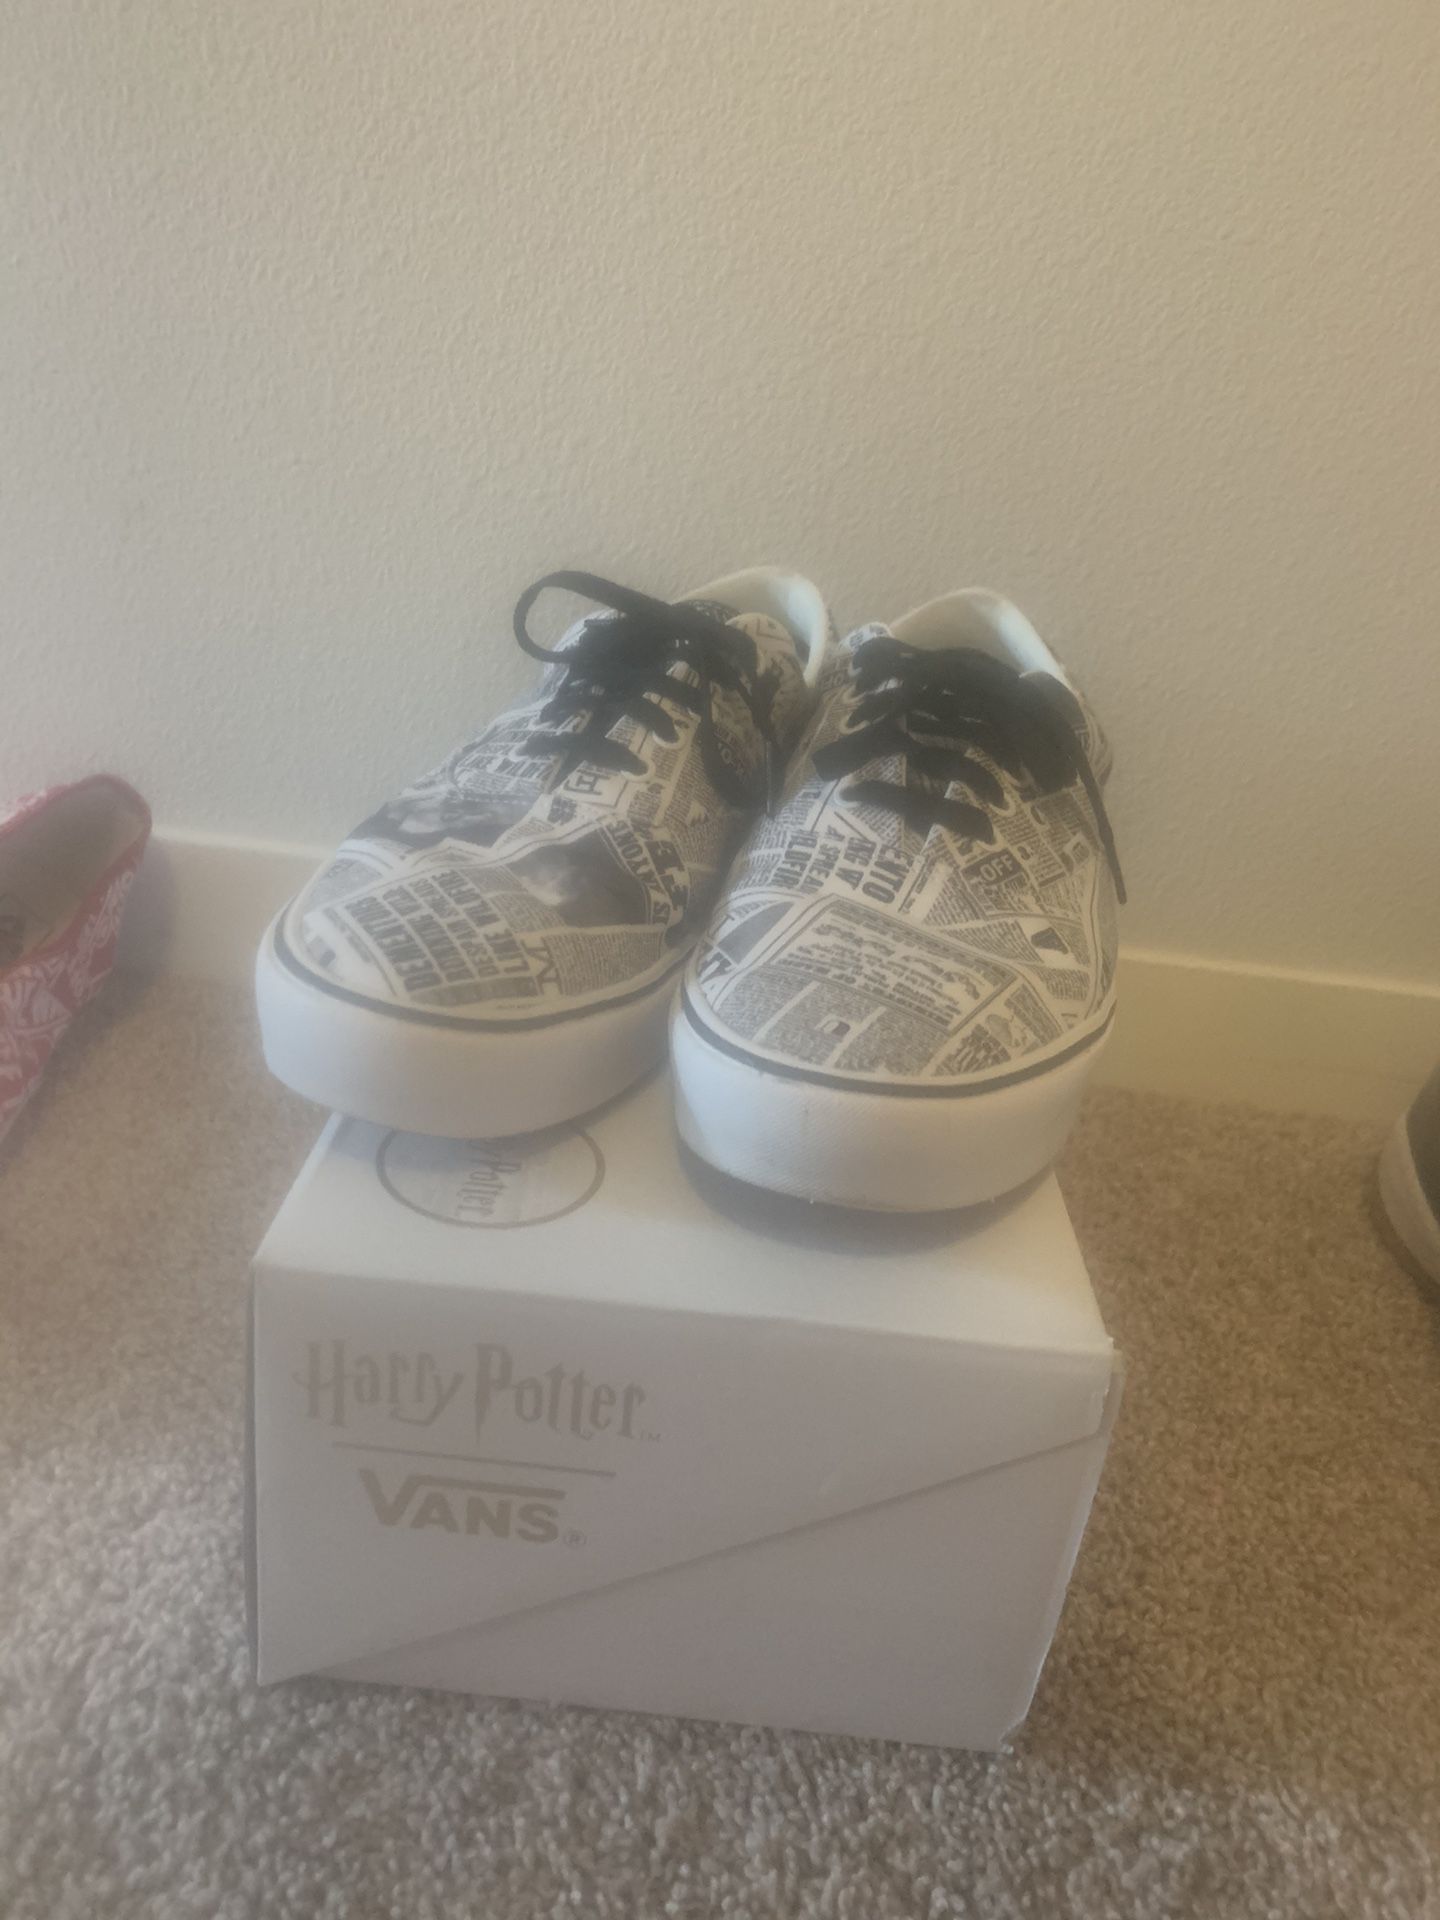 Vans x Harry Potter (size 13)